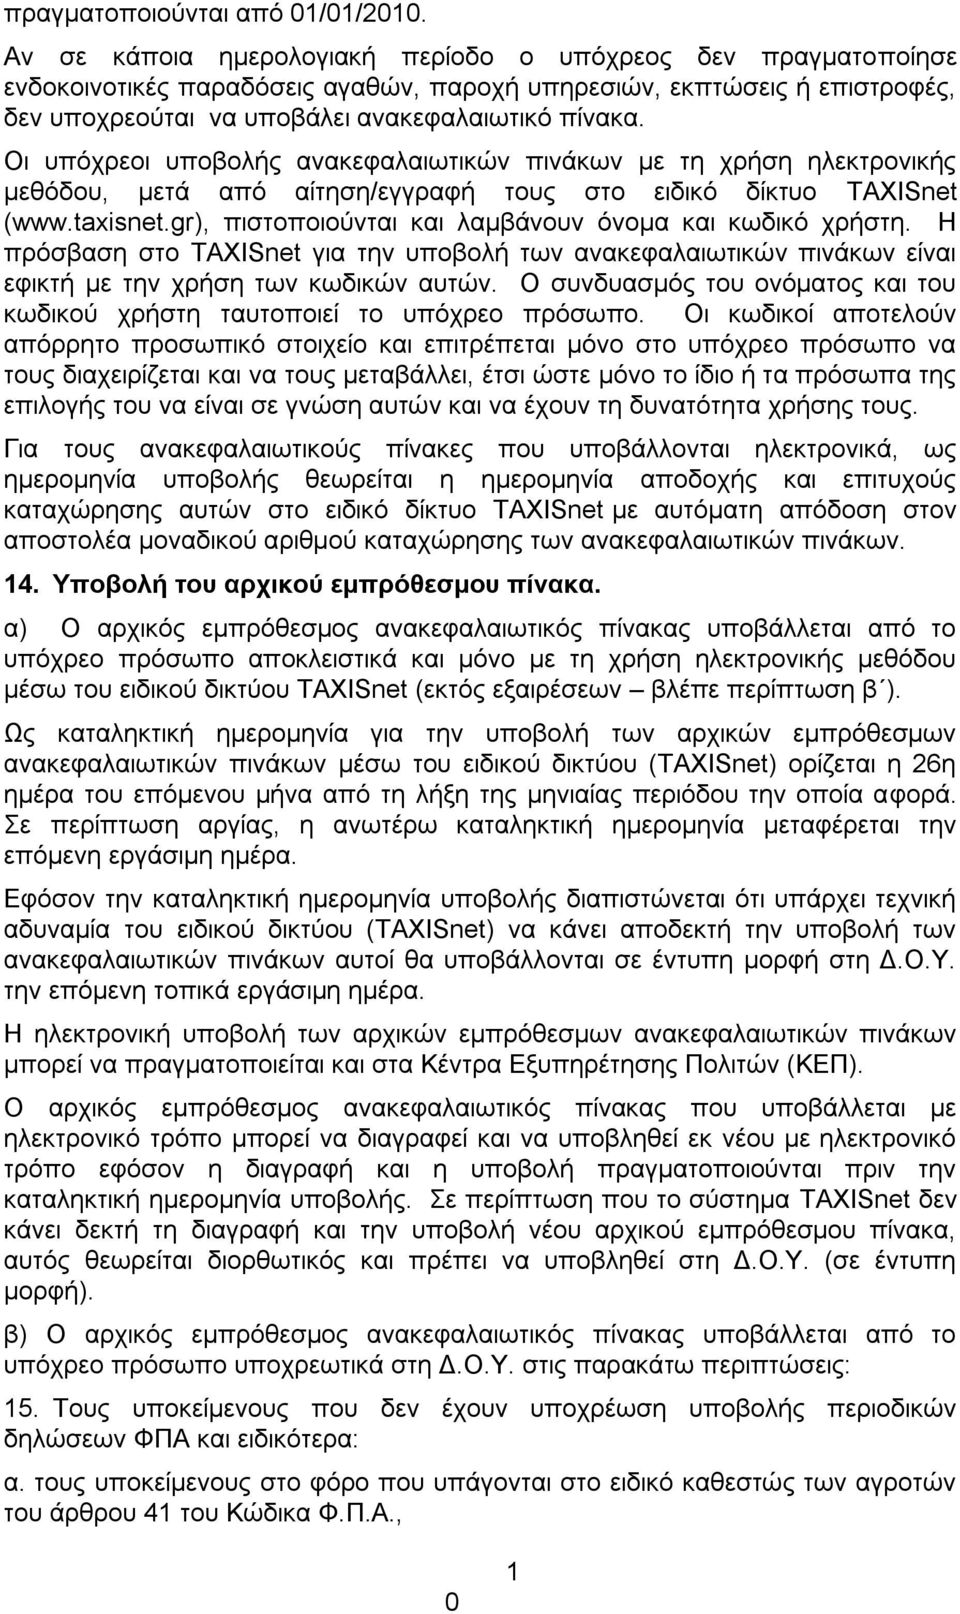 Οι υπόχρεοι υποβολής ανακεφαλαιωτικών πινάκων με τη χρήση ηλεκτρονικής μεθόδου, μετά από αίτηση/εγγραφή τους στο ειδικό δίκτυο TAXISnet (www.taxisnet.